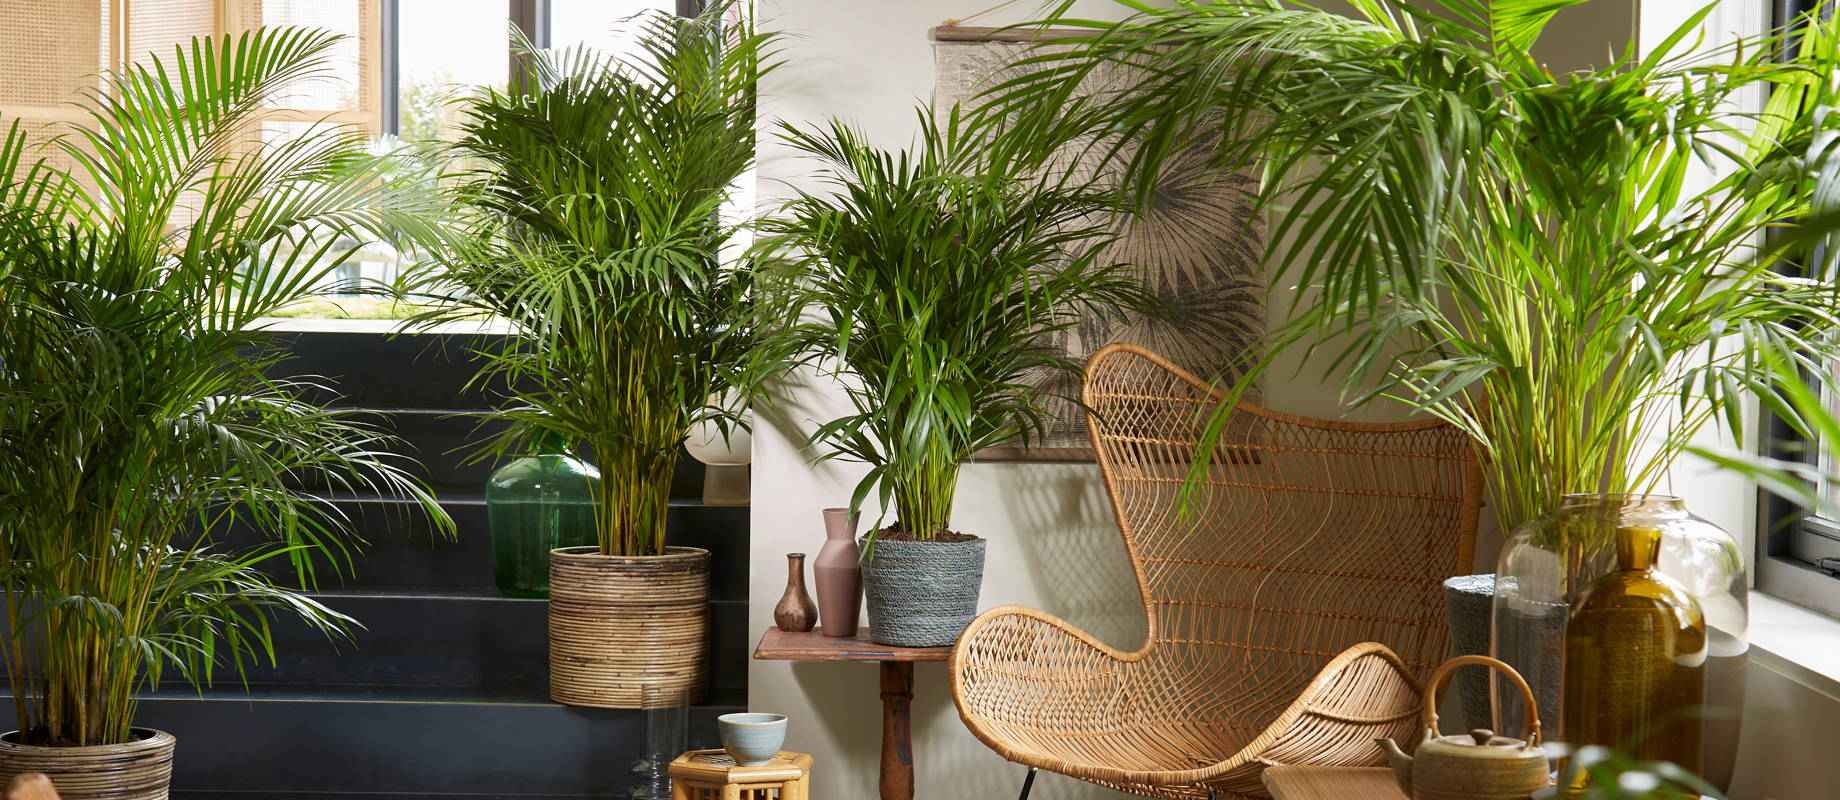 Le Kentia, un palmier d'intérieur peu exigeant - passion-horticoles